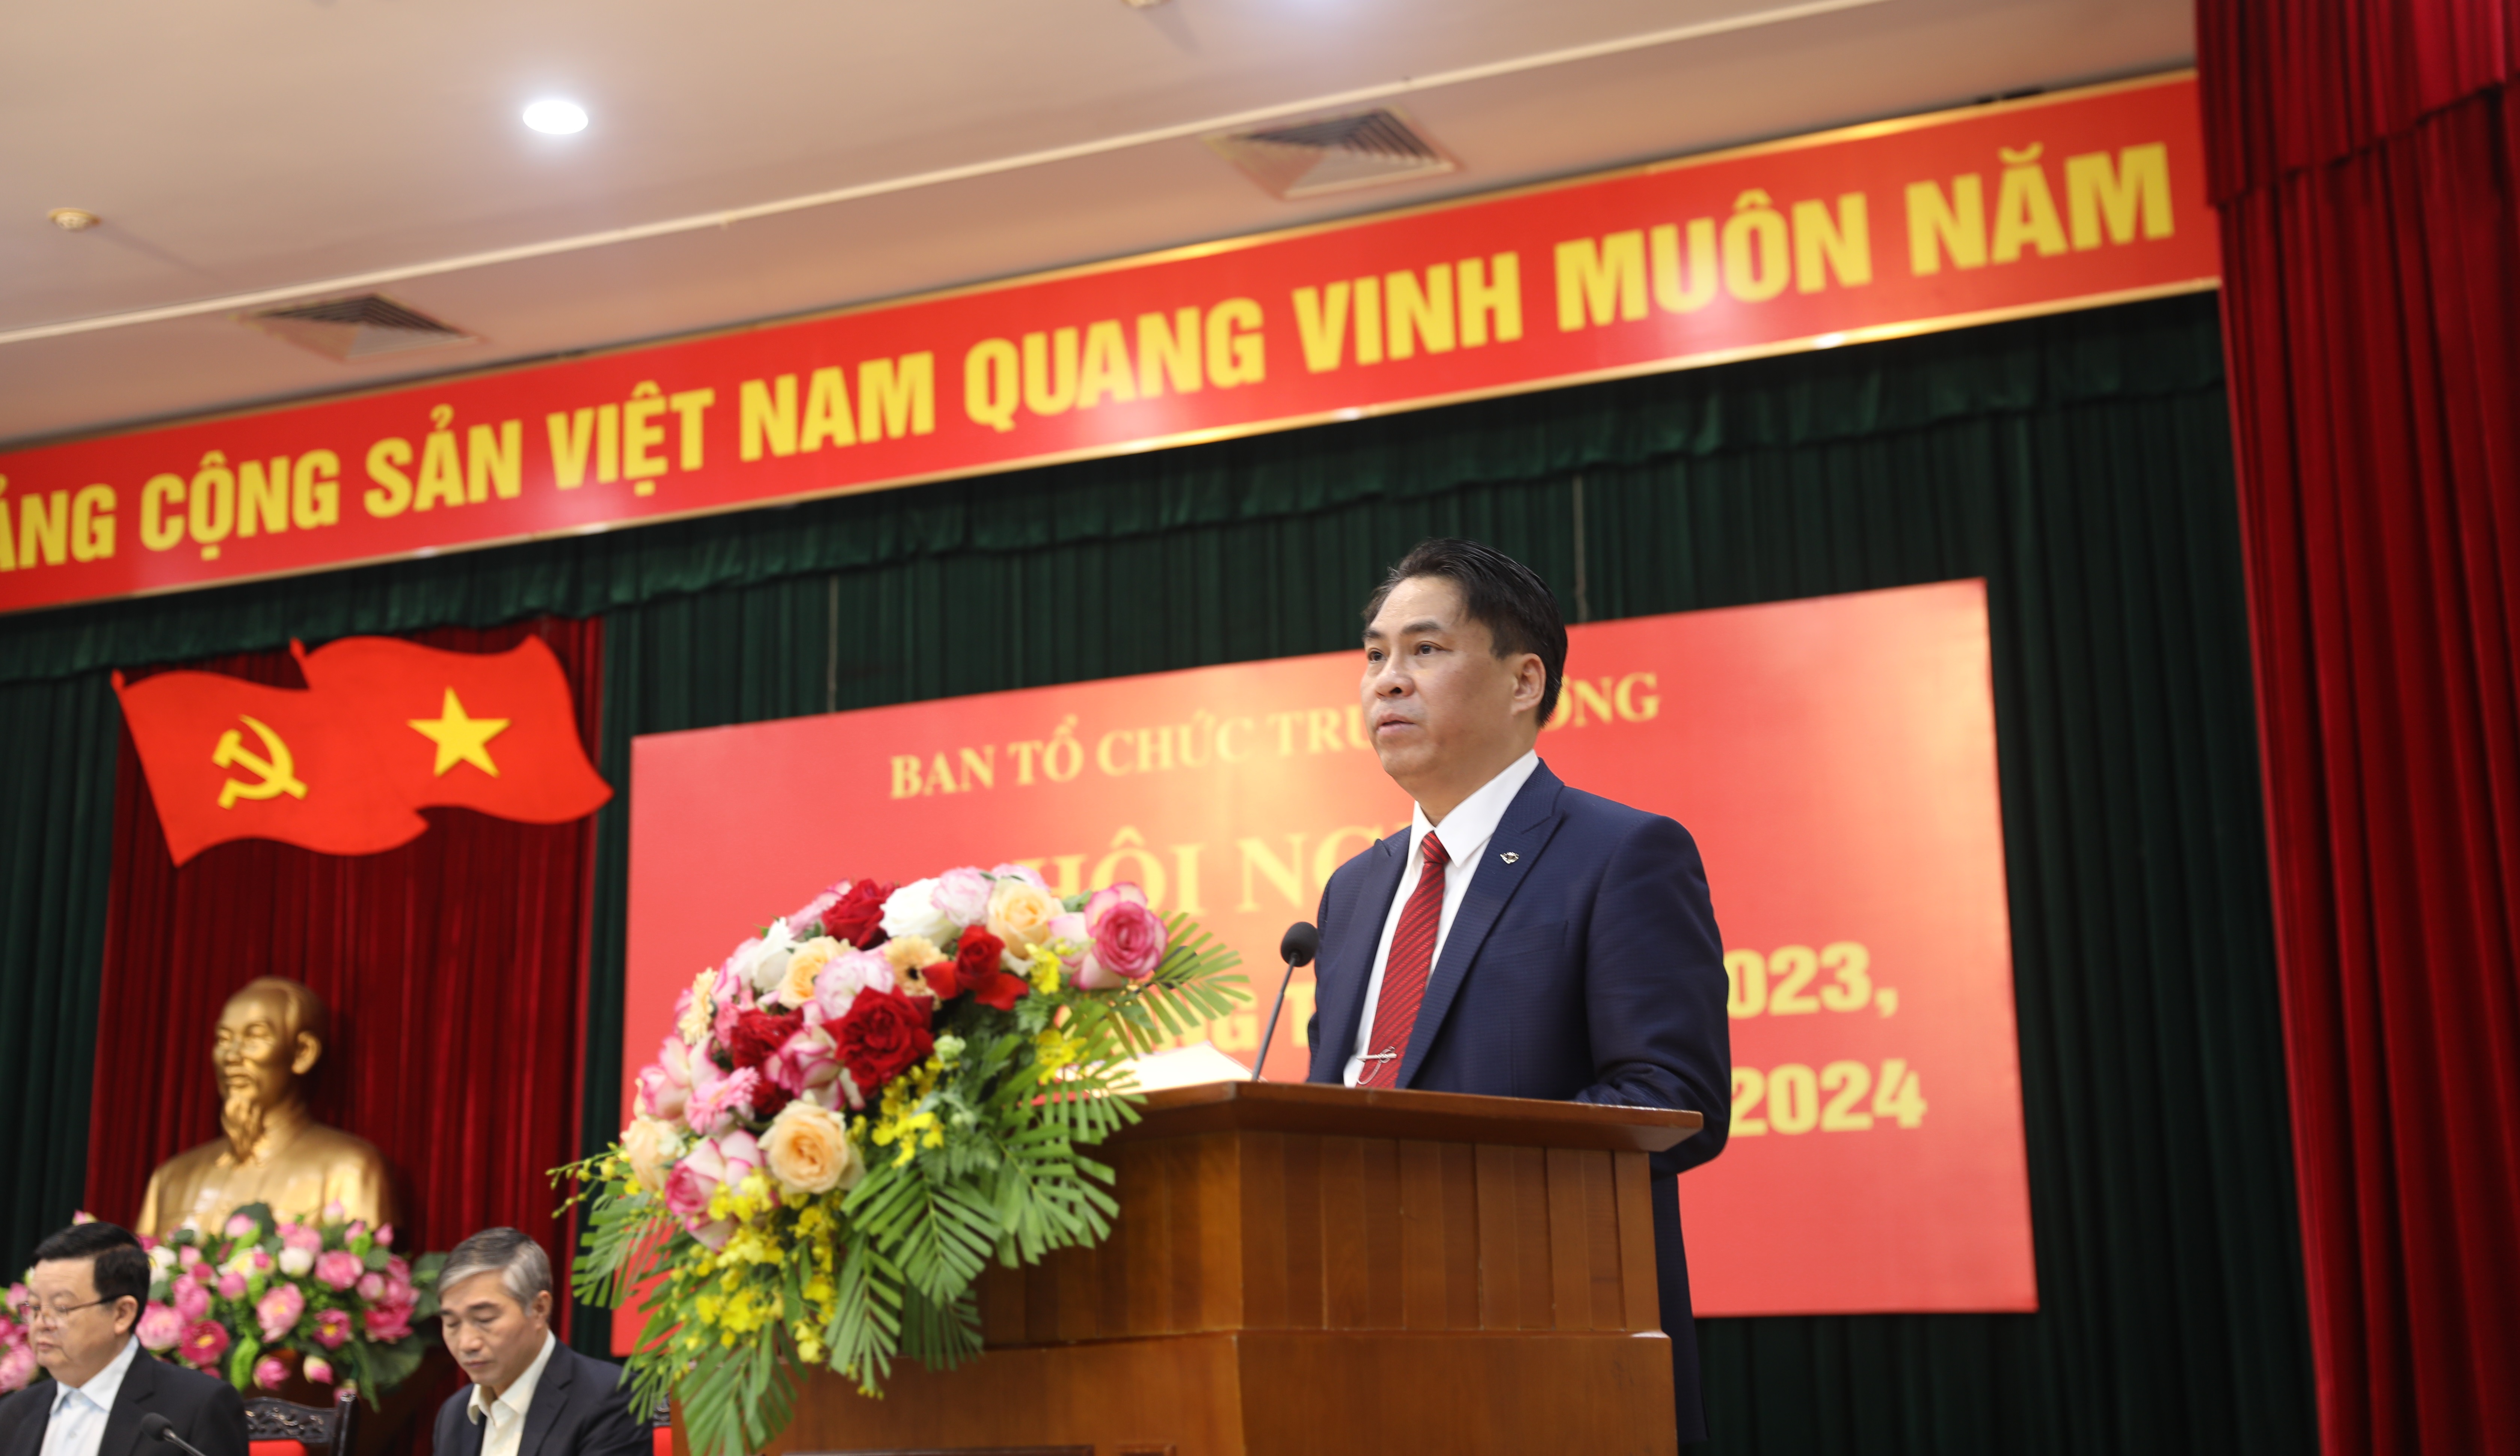 Đ/c Phan Thăng An, Phó Trưởng ban, Phó Bí thư Đảng ủy cơ quan điều hành phần thảo luận tại Hội nghị.